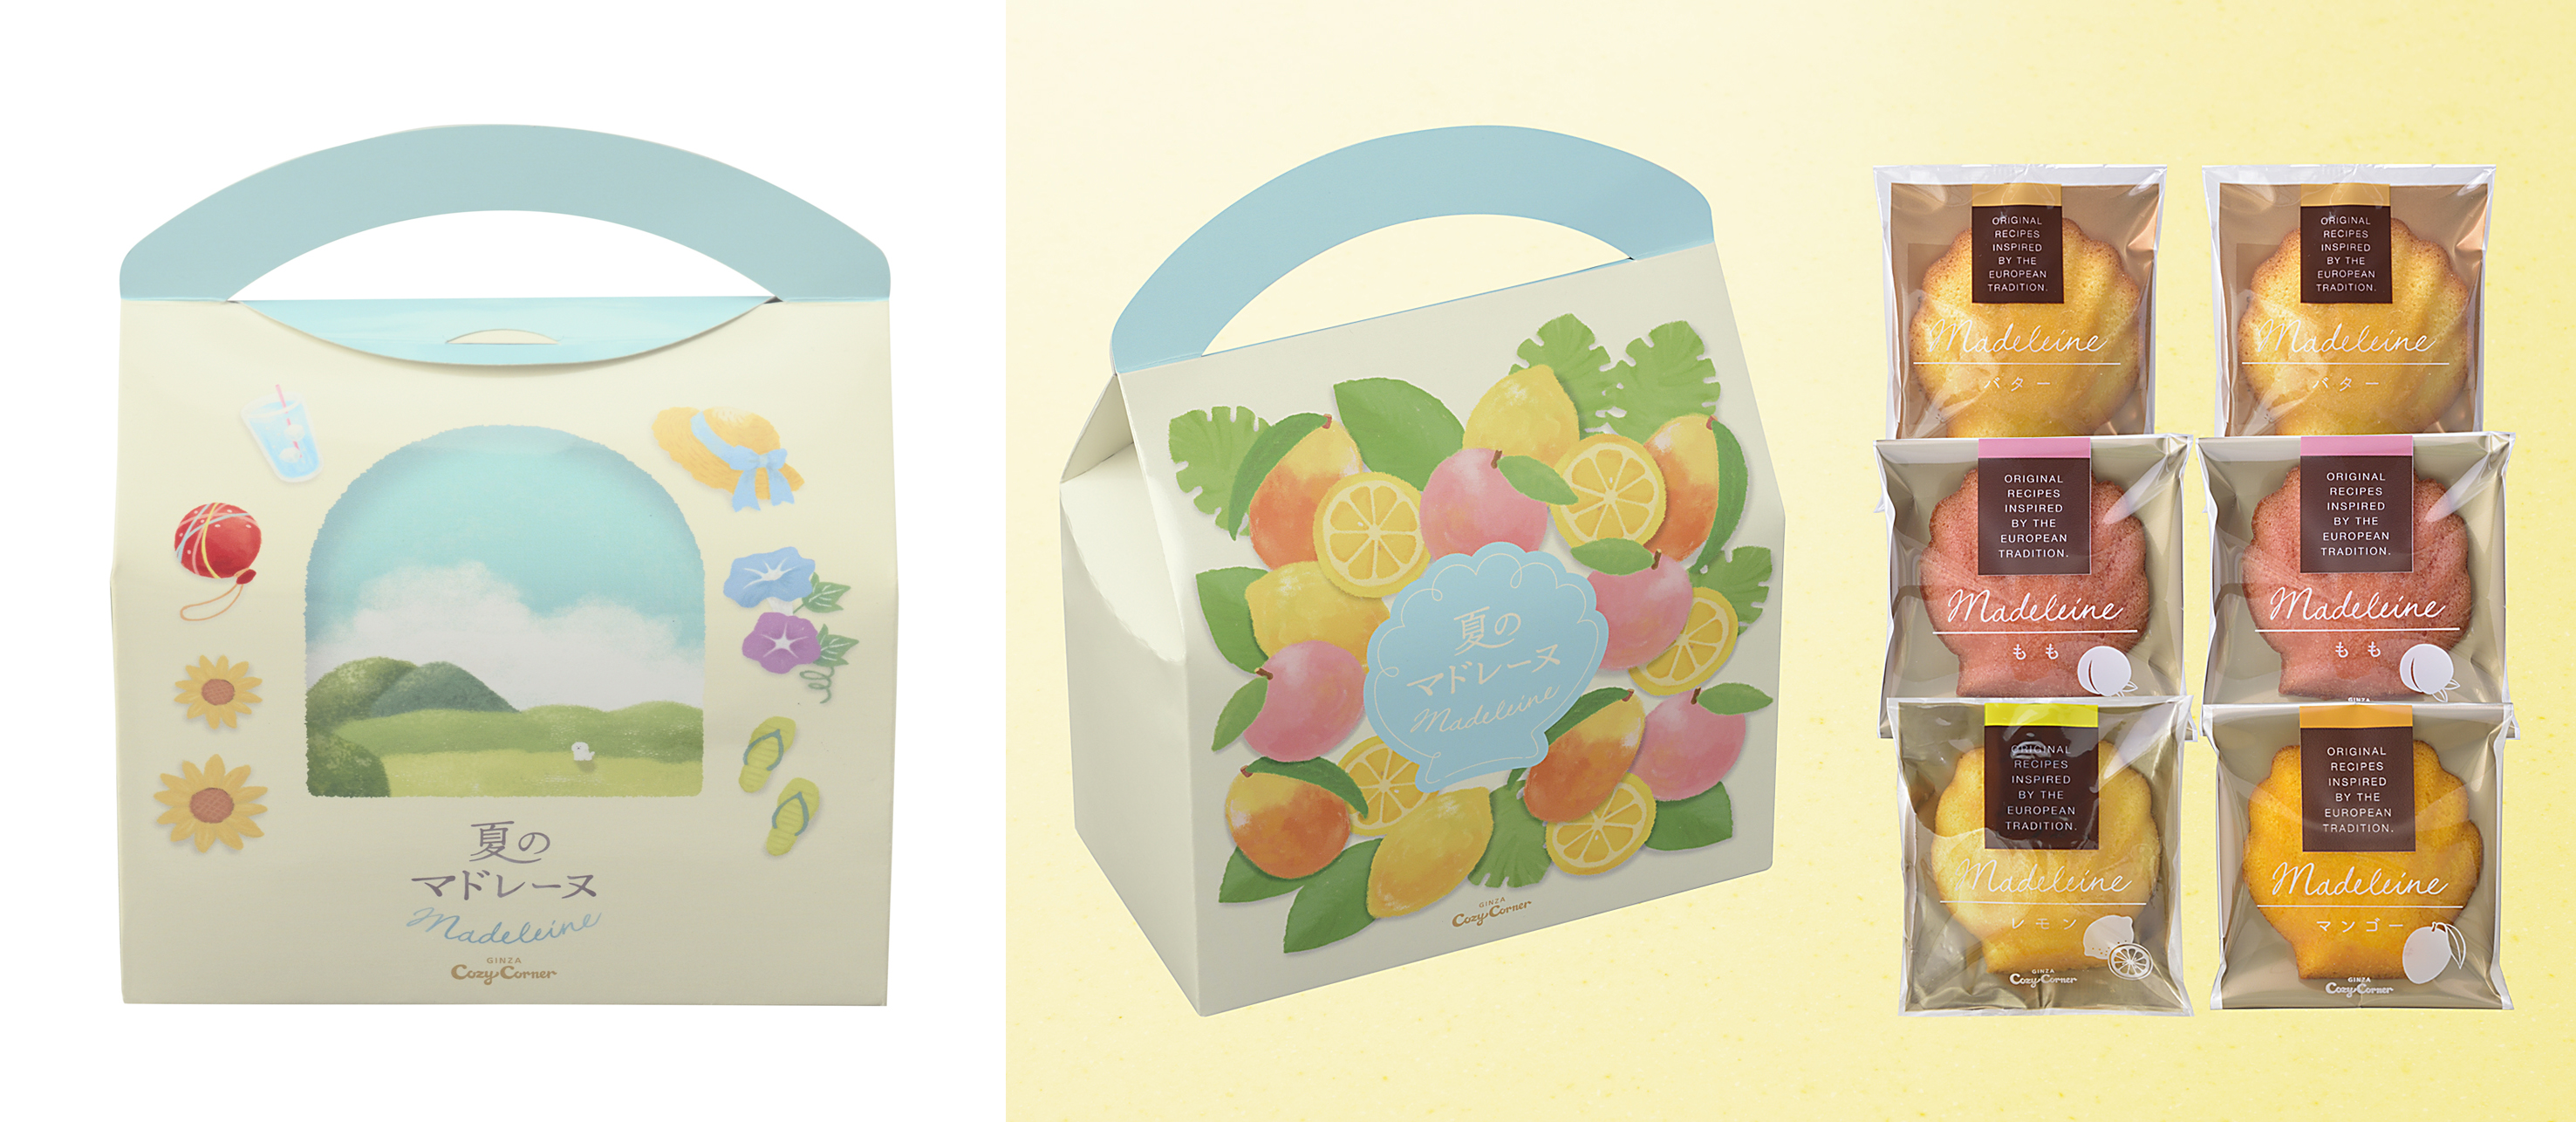 【銀座コージーコーナー】「夏のマドレーヌ」がパッケージデザインを一新して登場！レモン、マンゴーなど季節限定のフレーバーを楽しもうのサブ画像2_夏のマドレーヌ（6個入）。パッケージには、涼しげな夏の情景をデザイン。